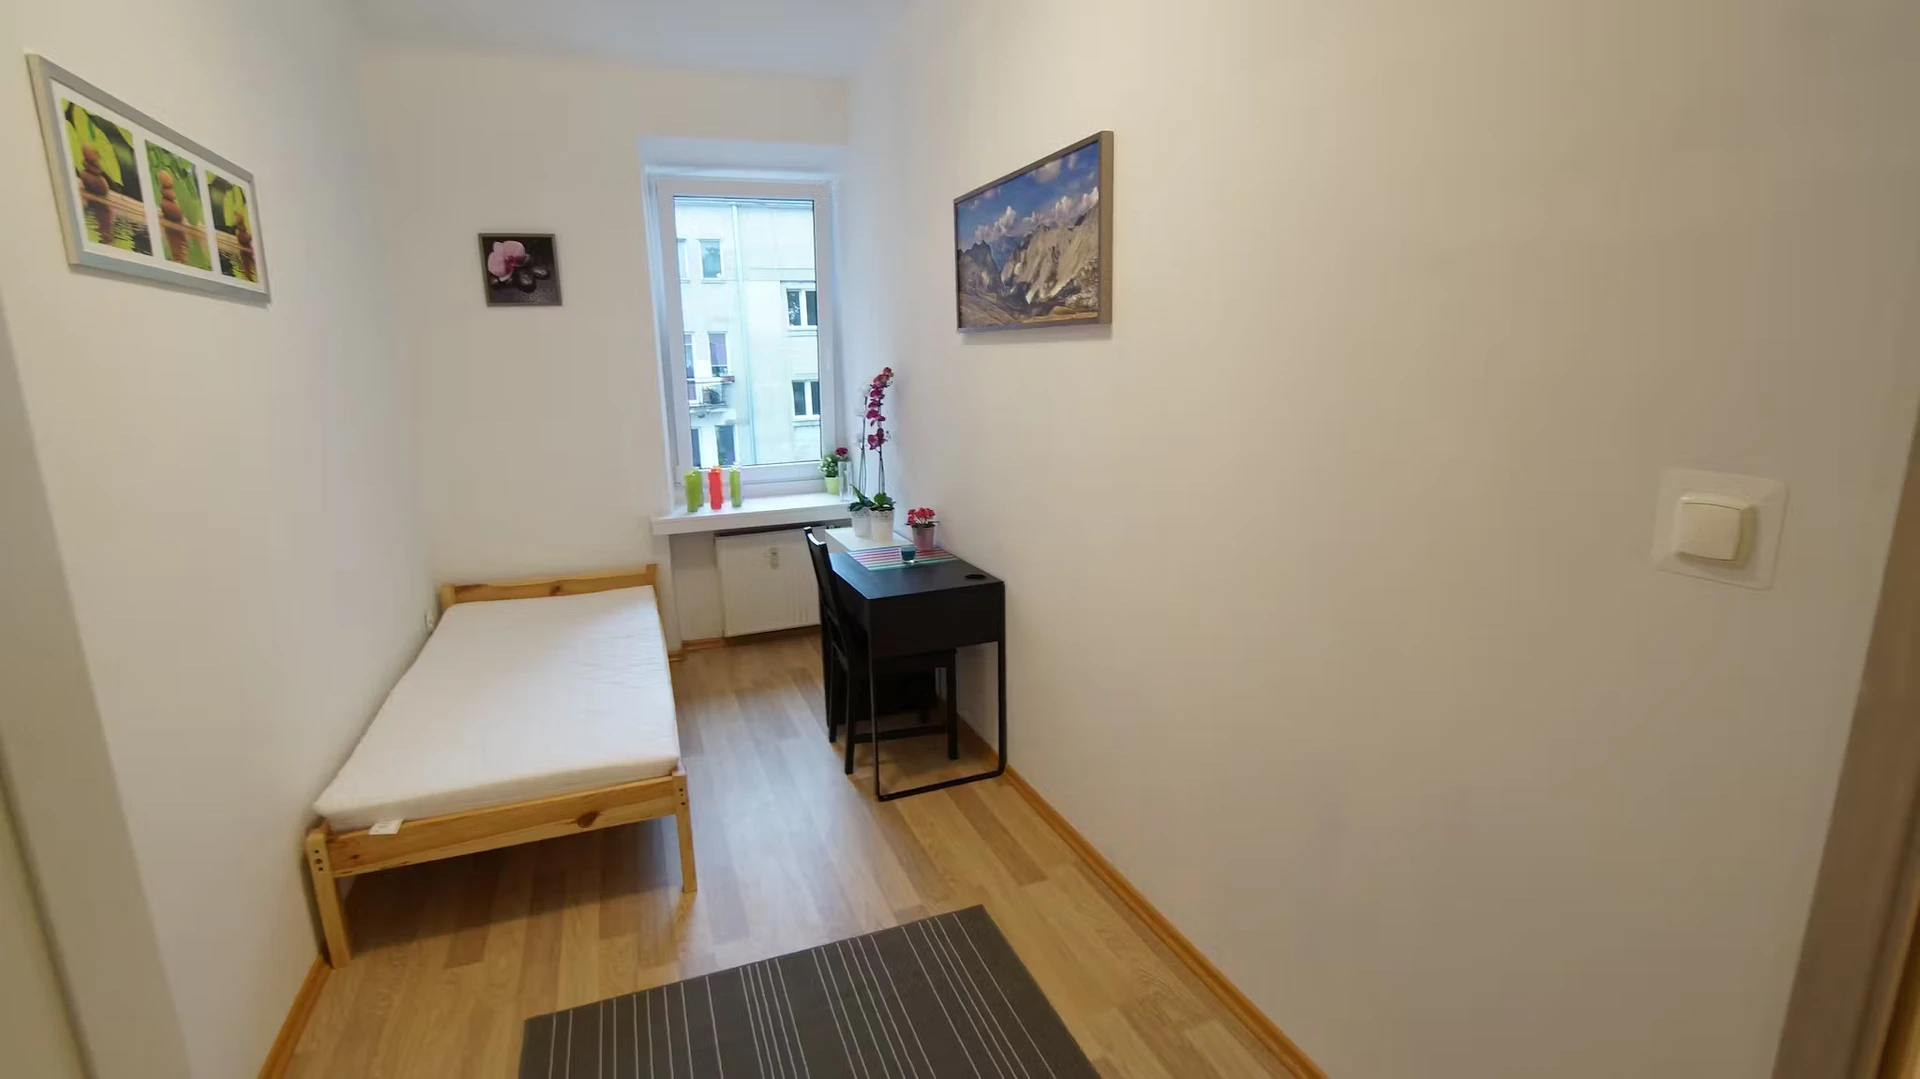 Alquiler de habitación en piso compartido en Lodz